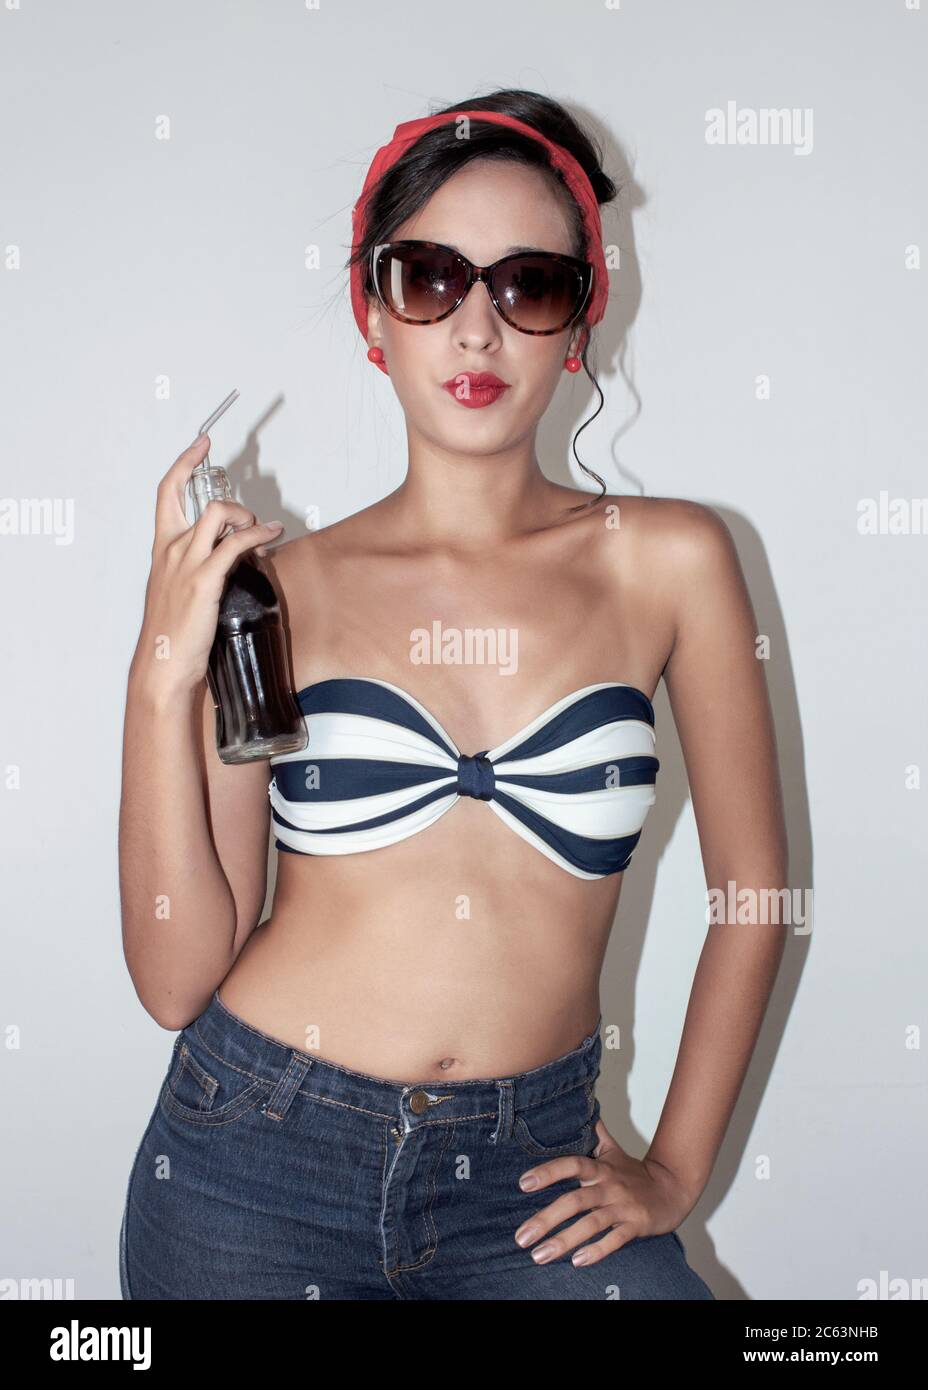 donna modellante con costume da bagno e sciarpa rossa e una bottiglia in mano Foto Stock